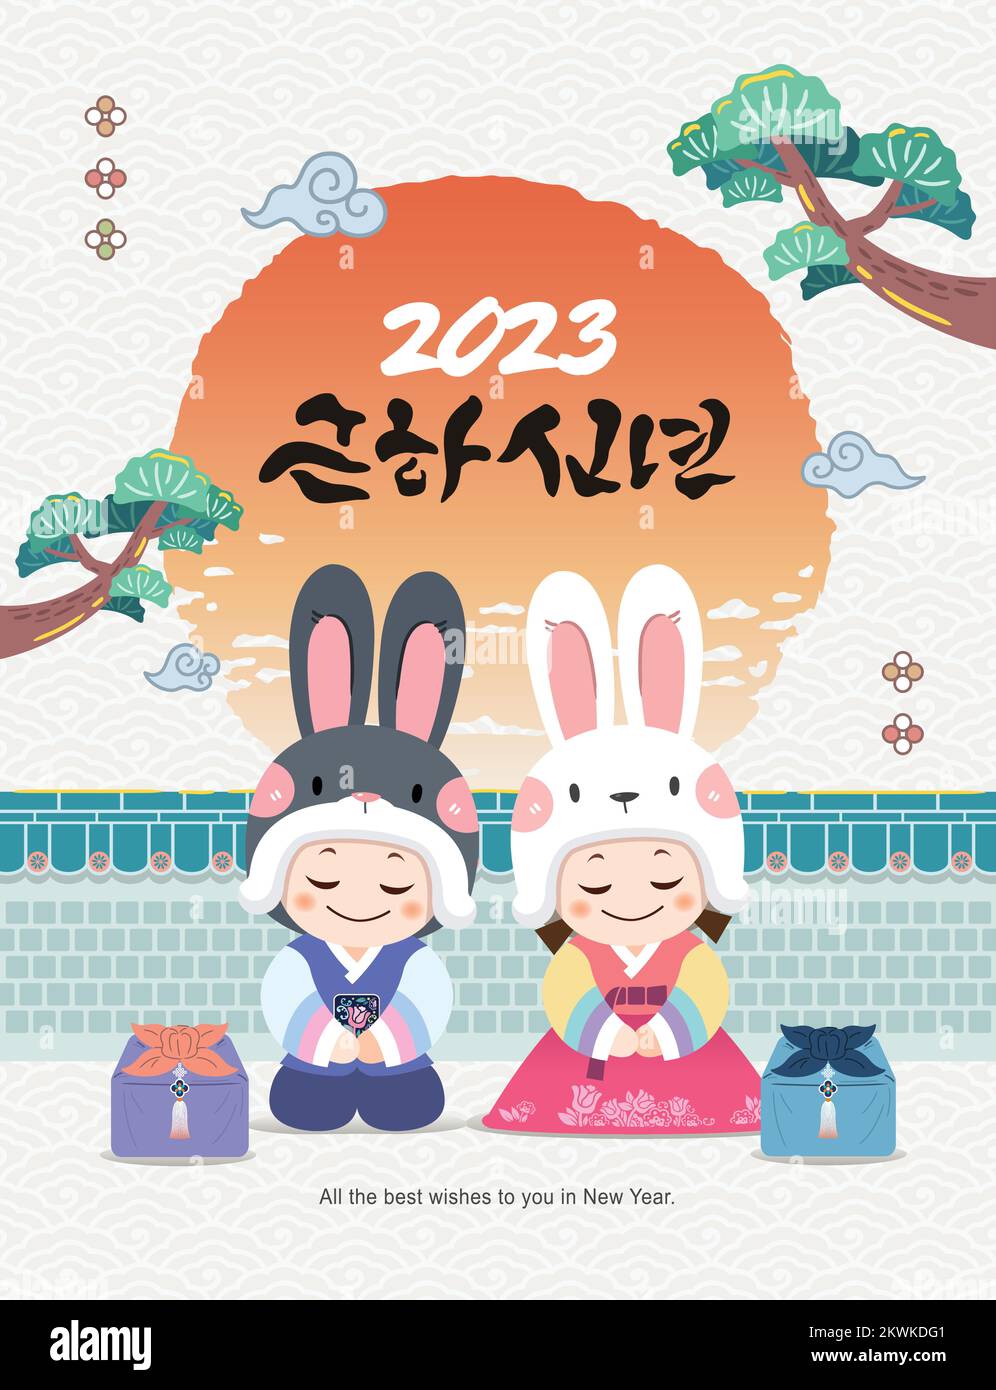 Koreanisches Neujahr. Kinder mit Hasenhüten und hanbok begrüßen das neue Jahr vor der traditionellen Mauer, wo die Sonne aufgeht. Stock Vektor